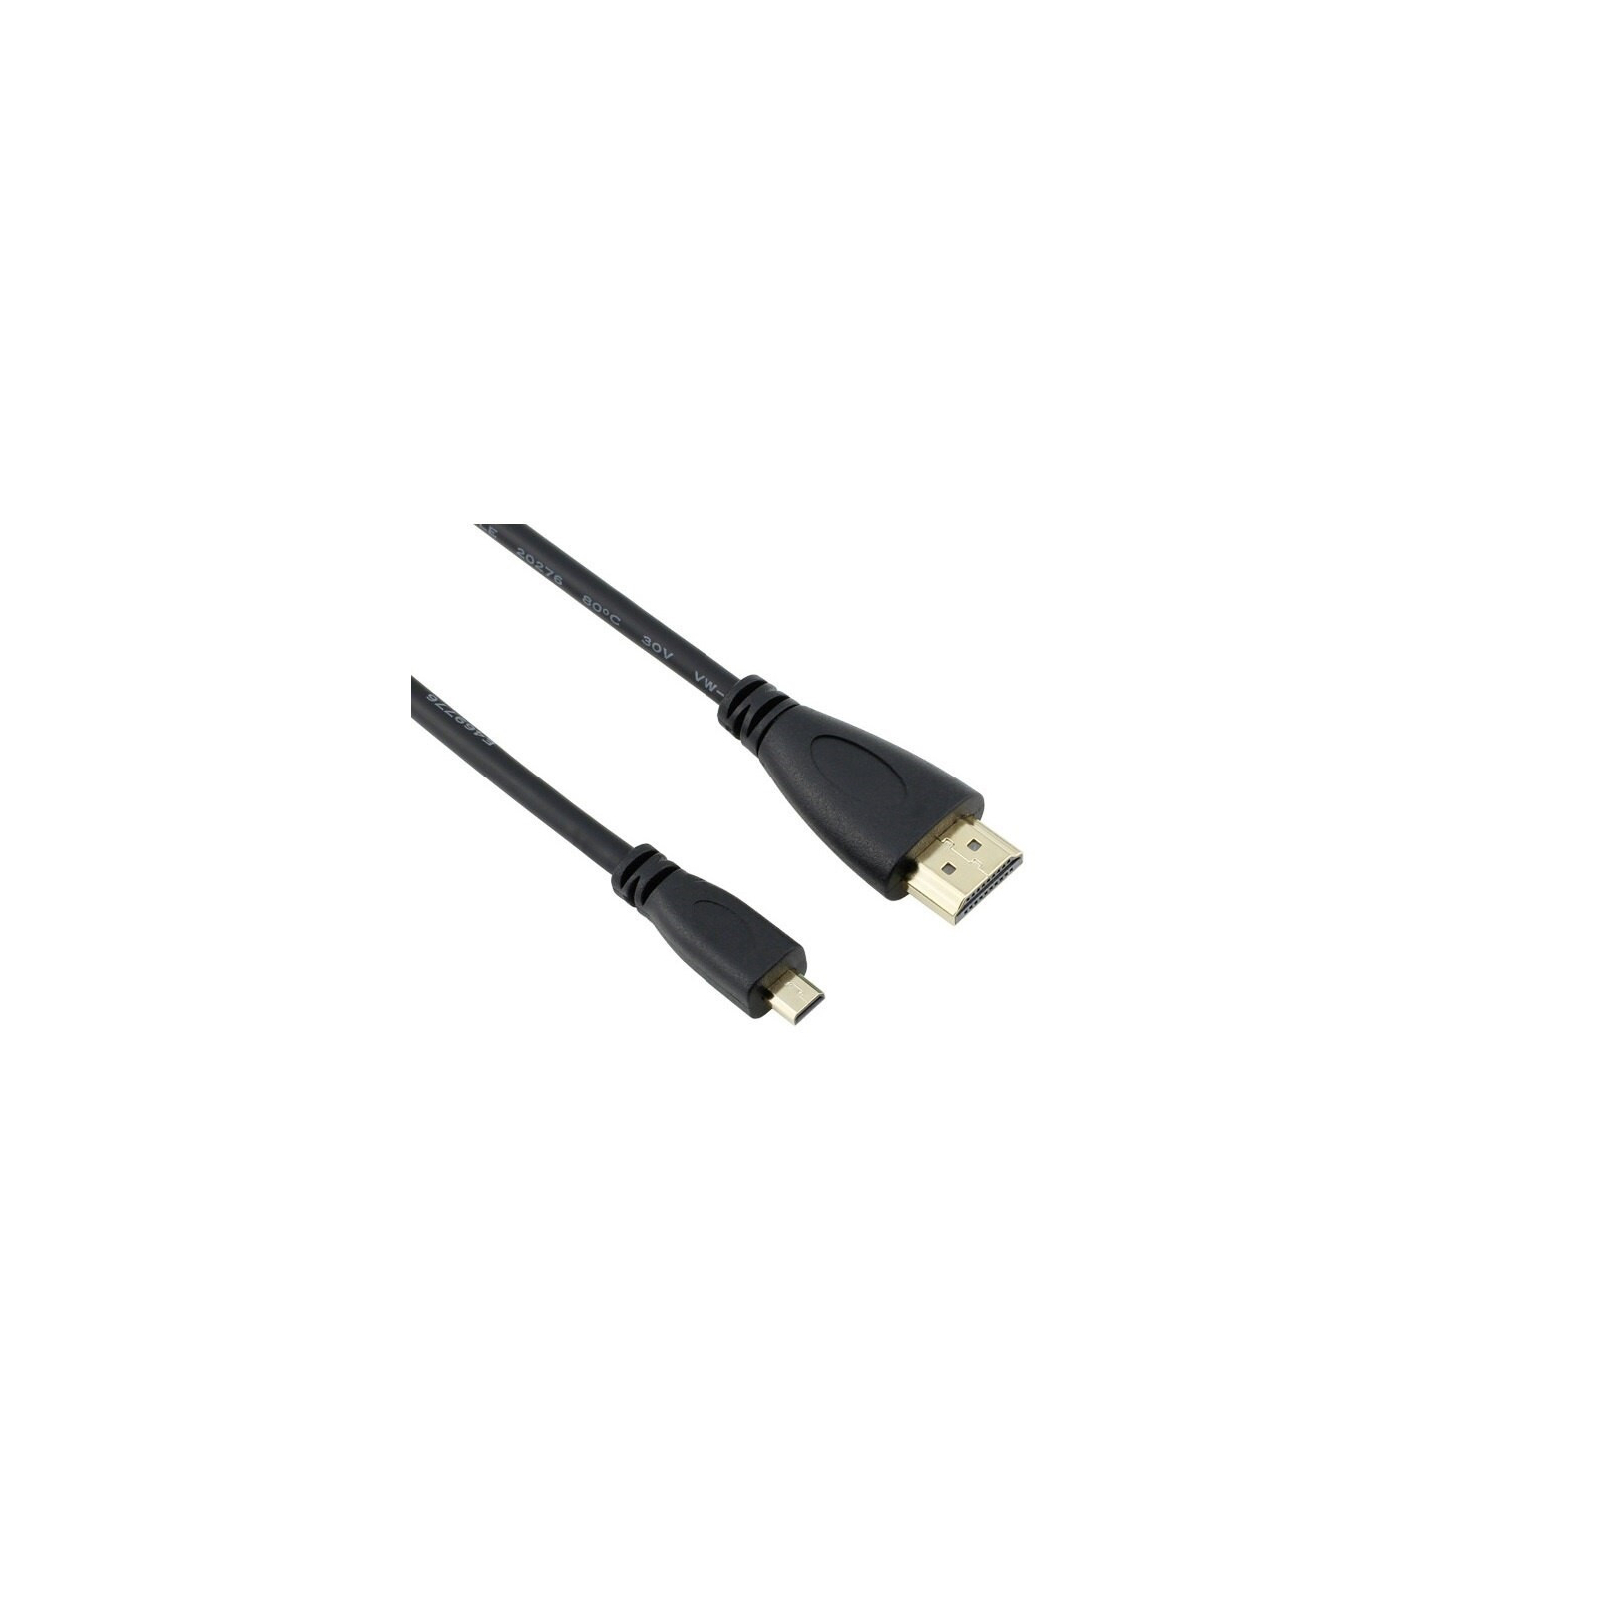 Дополнительное оборудование к промышленному ПК Raspberry Pi кабель Micro HDMI to HDMI for Pi 4B (RA557)